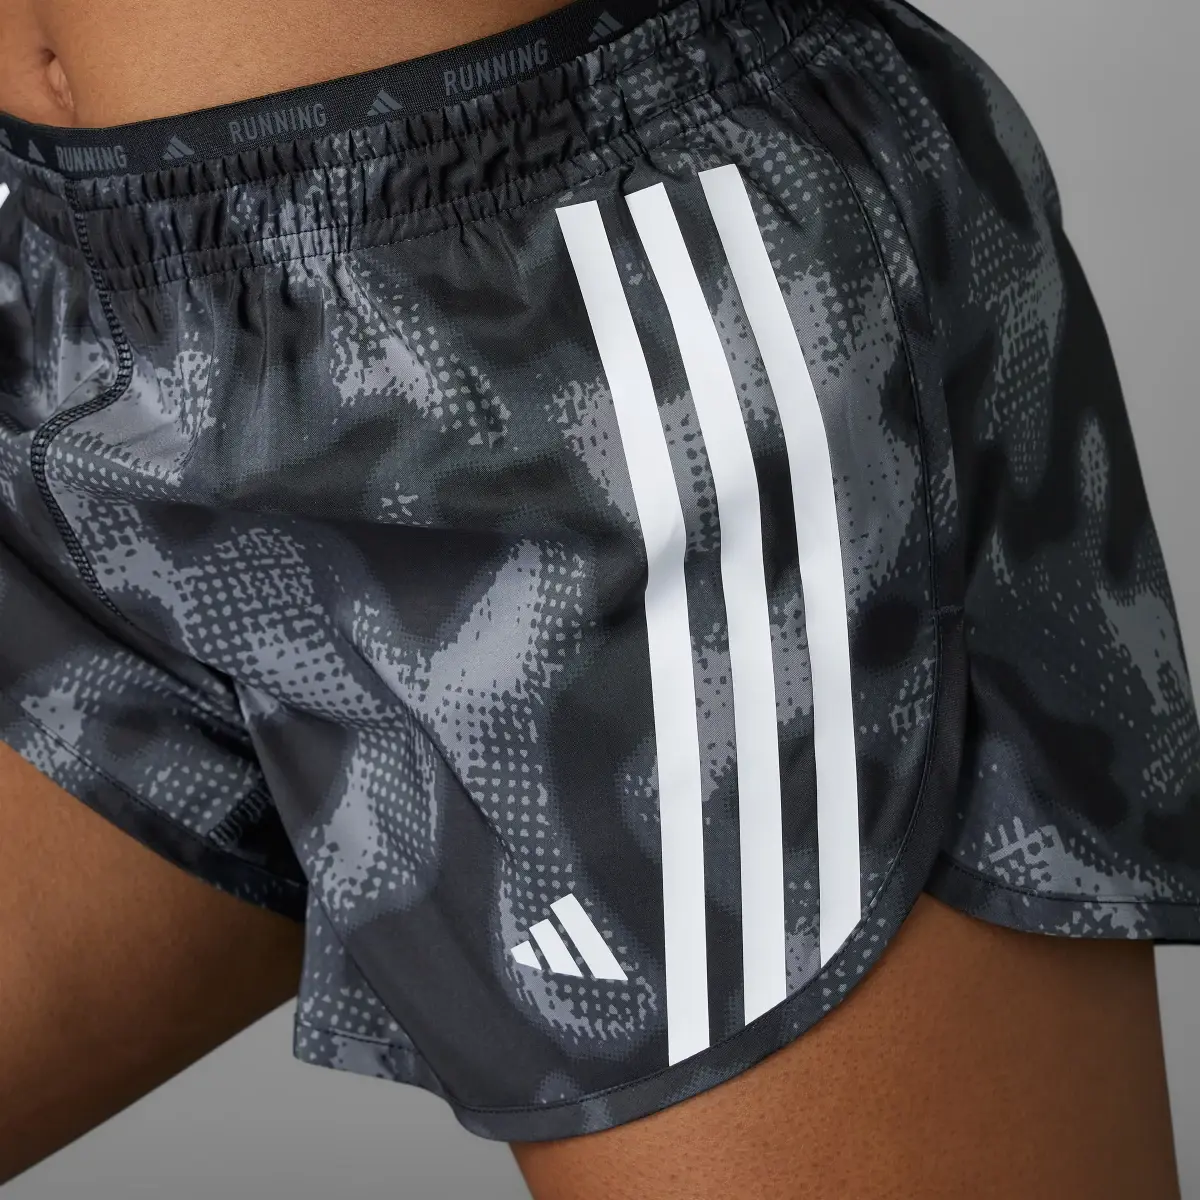 Adidas Own the Run 3-Stripes Allover Print Shorts. 3